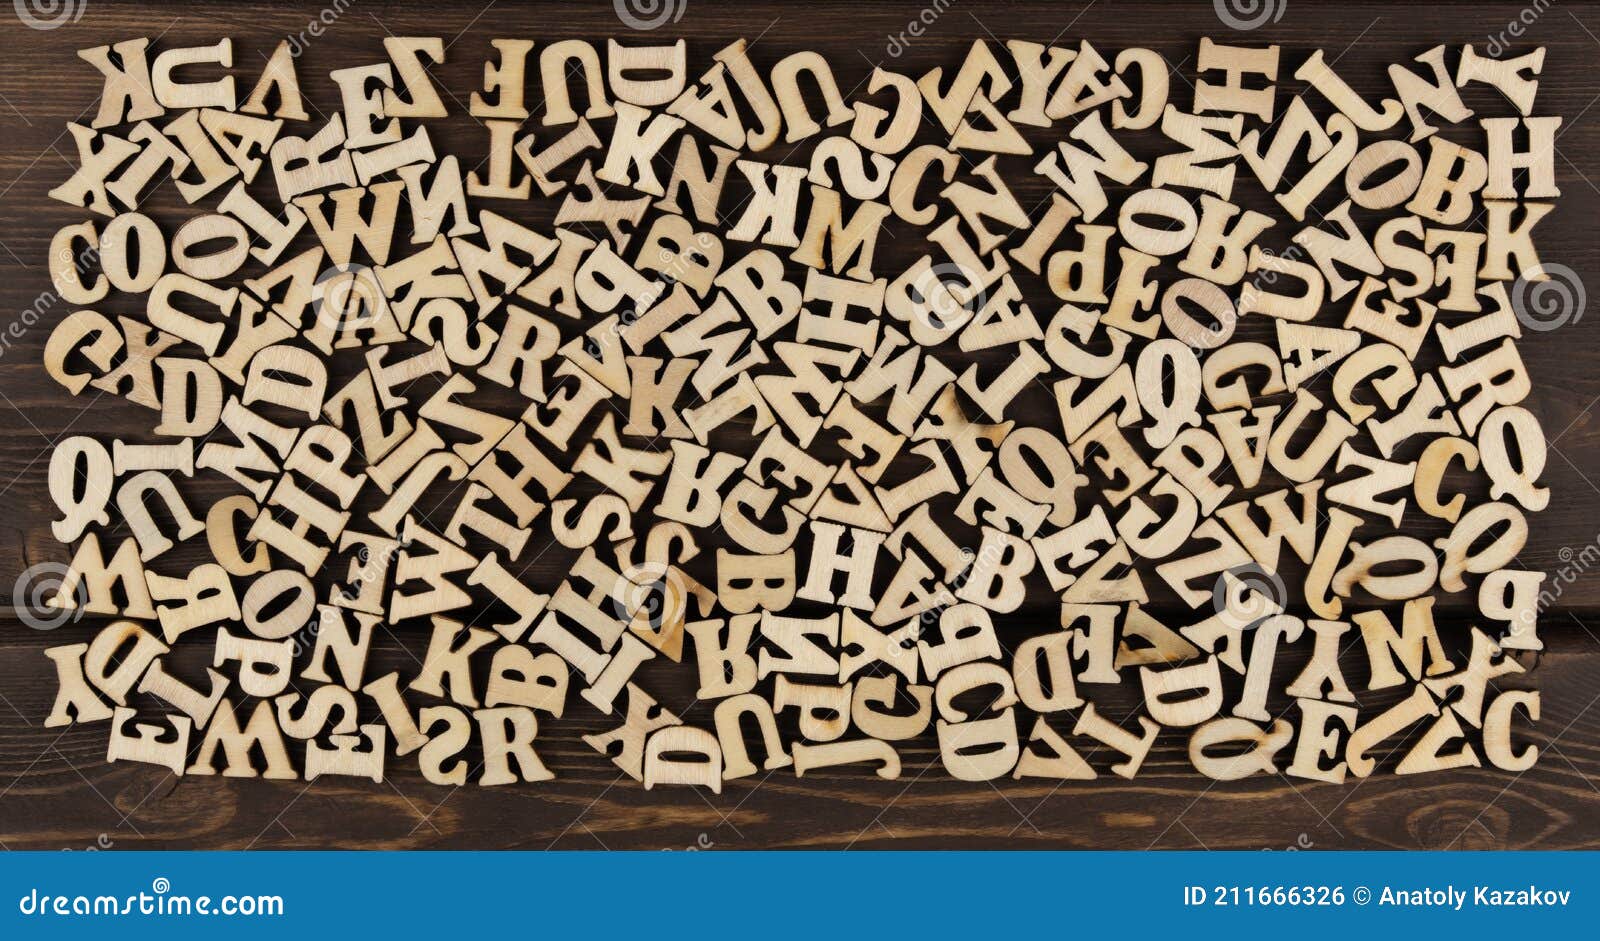 muitas letras de madeira do alfabeto inglês entre o garfo e a faca